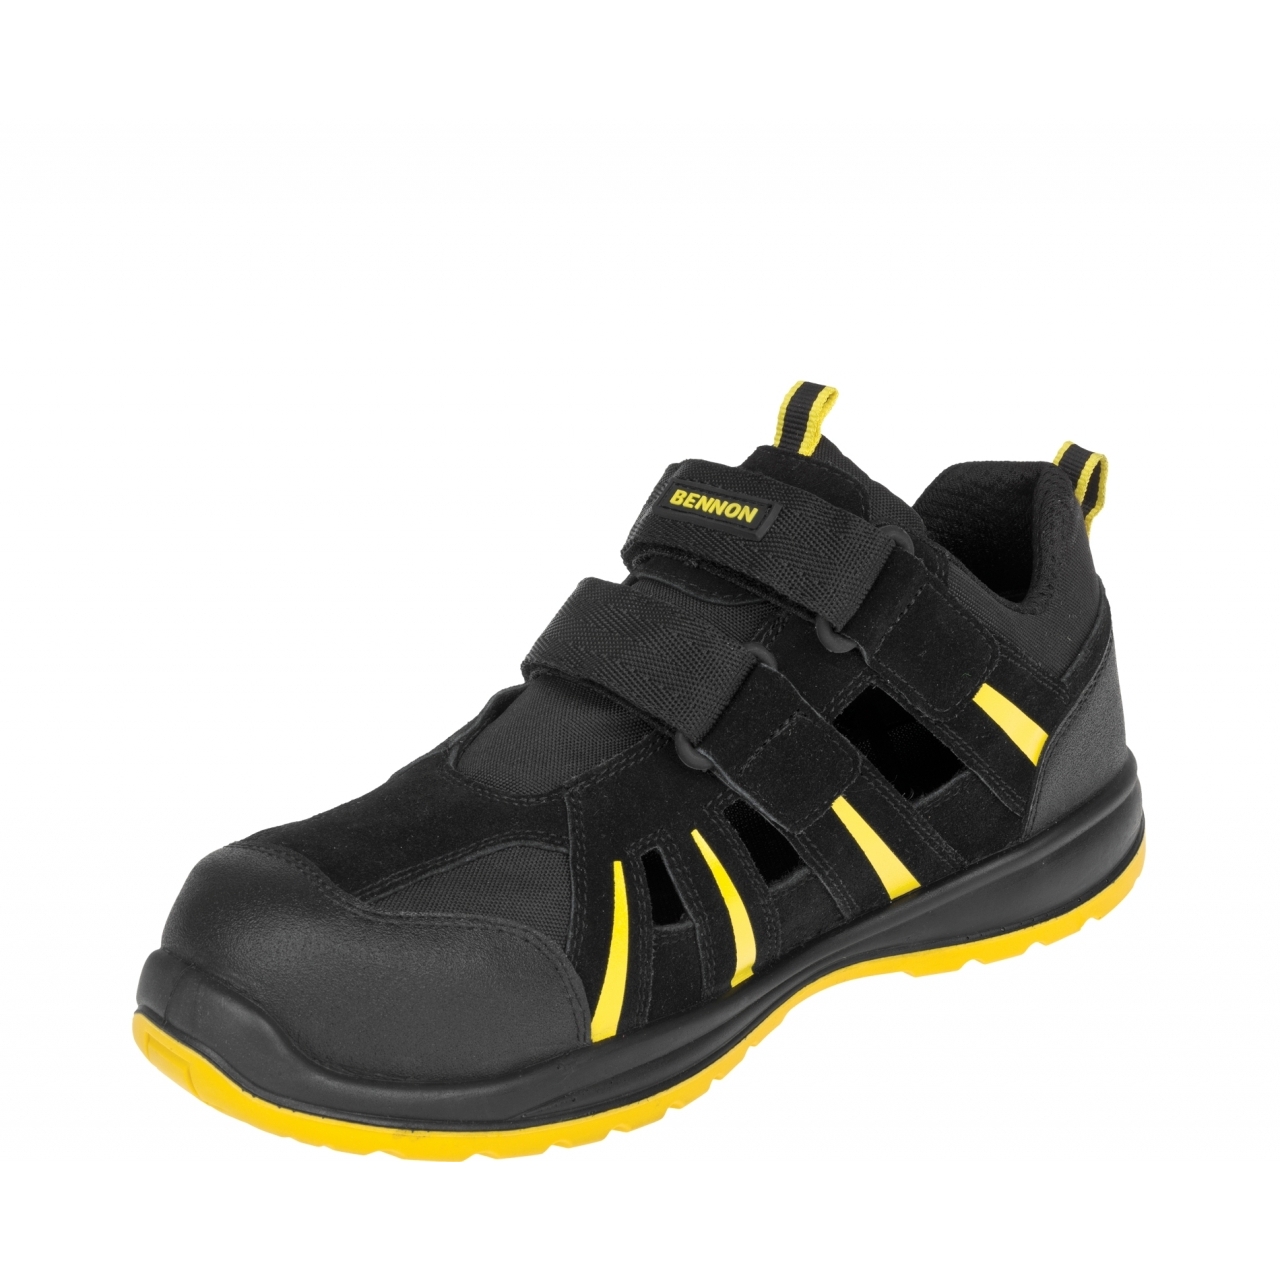 Sandále Bennon Ribbon S1 ESD - černé-žluté, 36